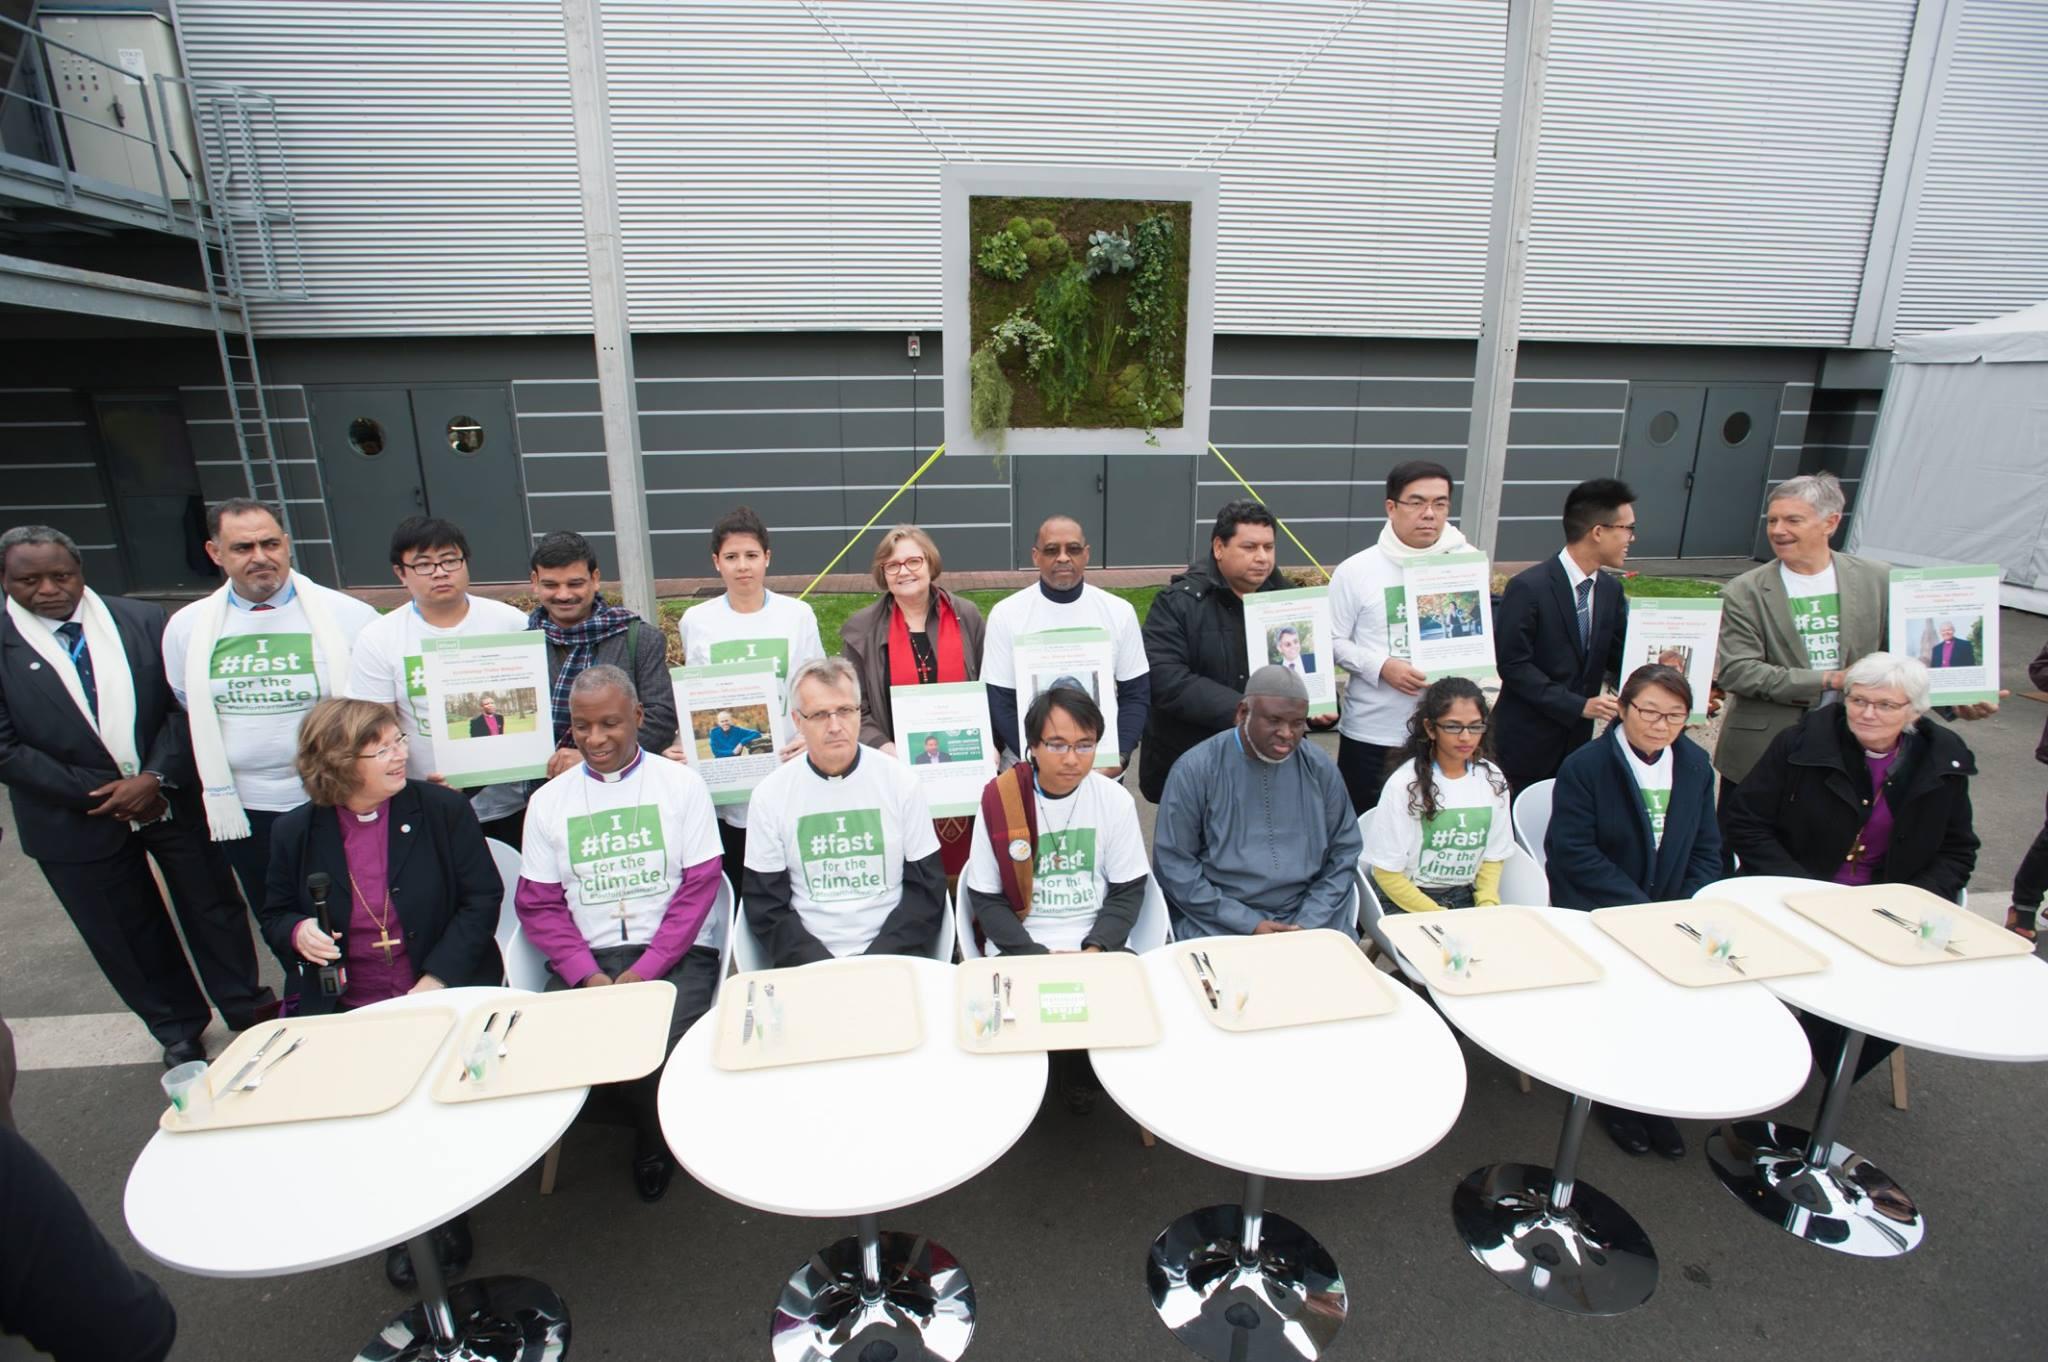 Beim UN-Klimagipfel in Paris (Frankreich) macht eine Gruppe EntscheidungsträgerInnen aus verschiedenen Religionen mit leeren Tabletts aufmerksam auf die Kampagne „Fasten für das Klima“. Foto: LWB/R. Rodrick Beiler